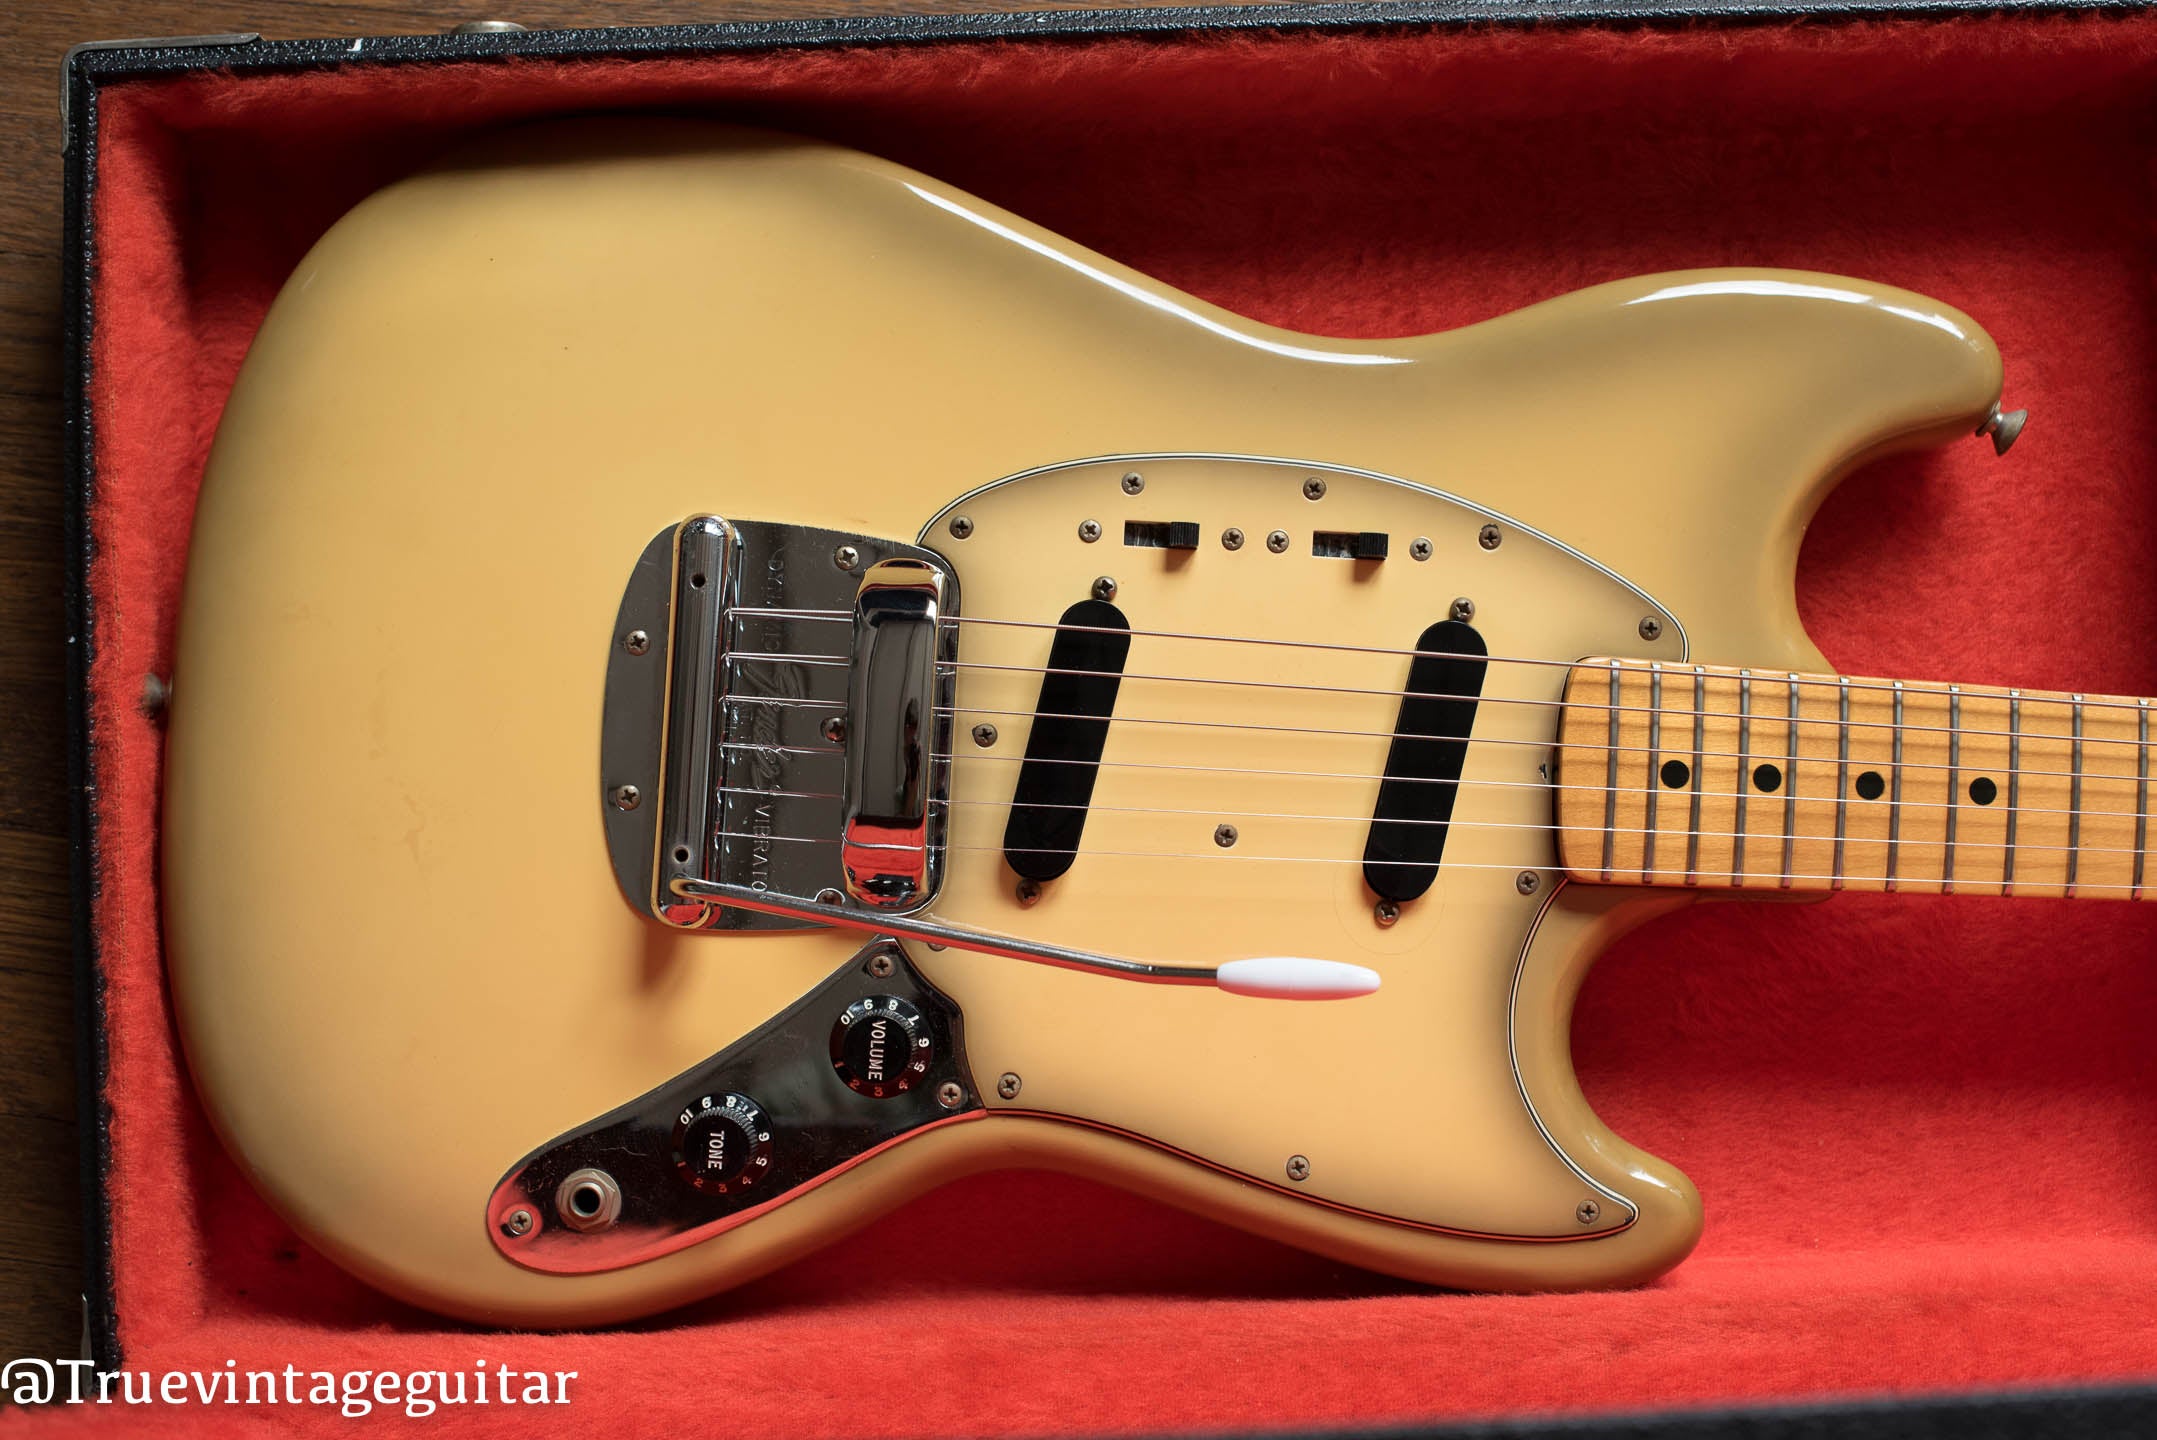 Vintage 1978 Fender Mustang Antigua guitar